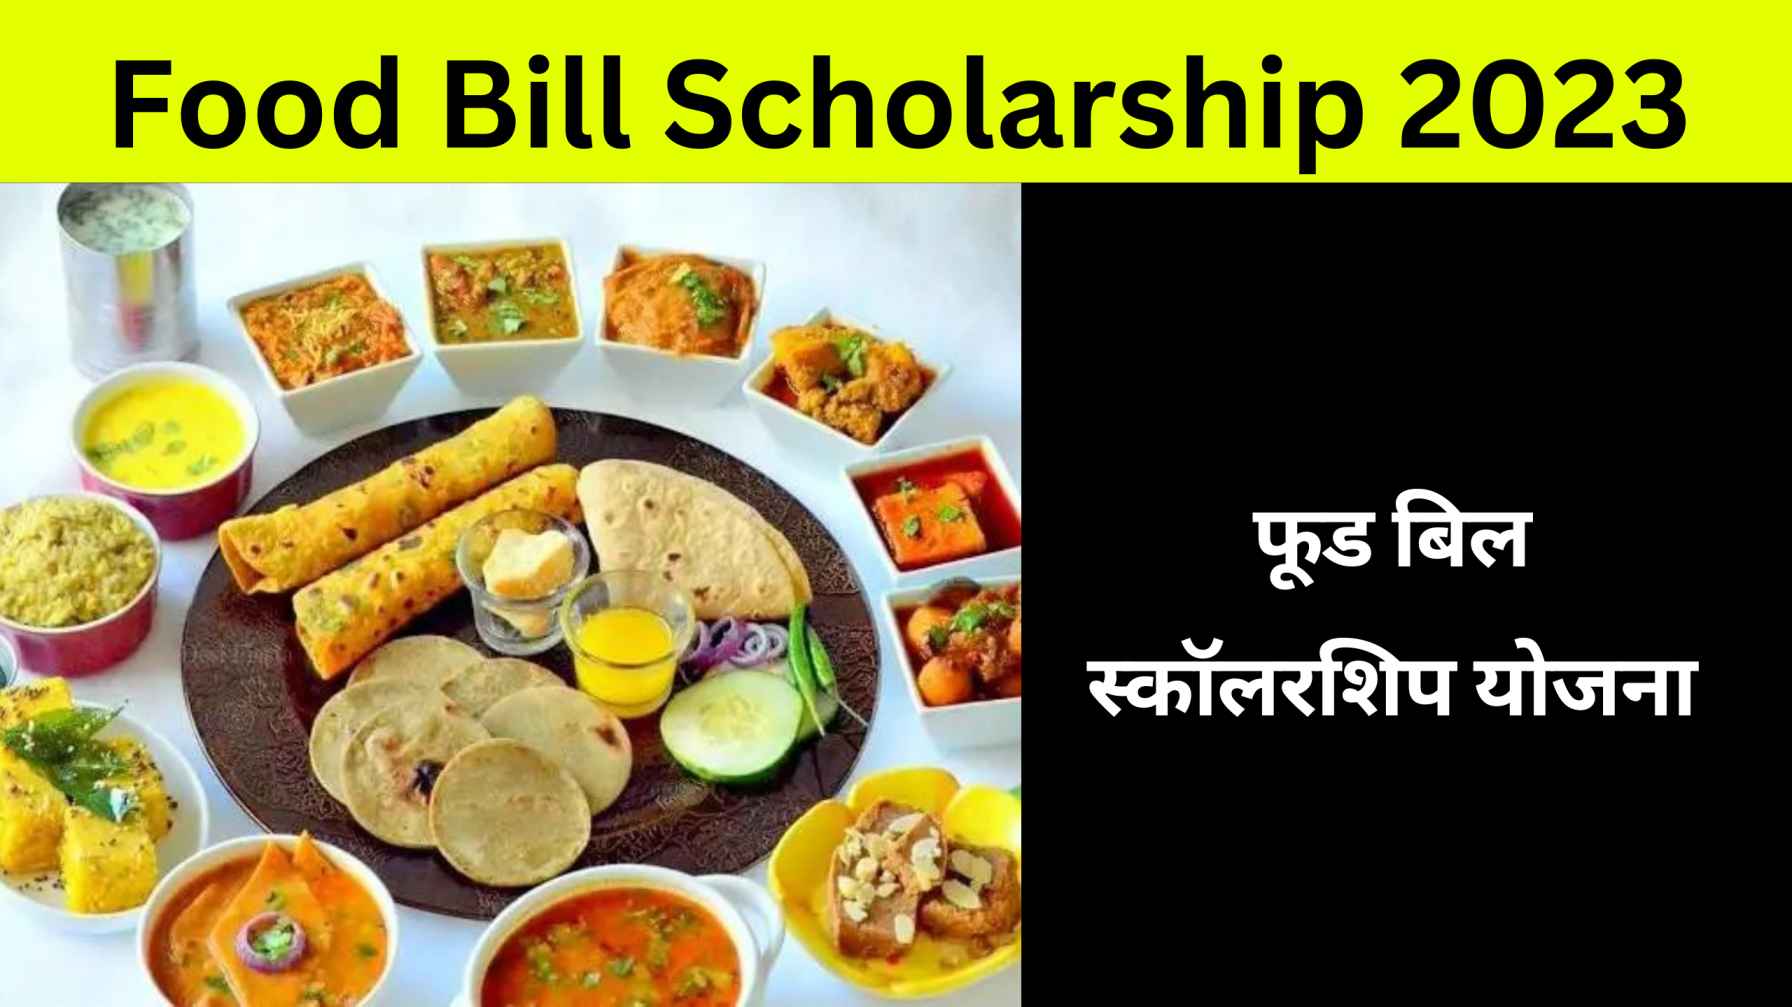 फूड बिल स्कॉलरशिप योजना Food Bill Scholarship 2023 in Hindi